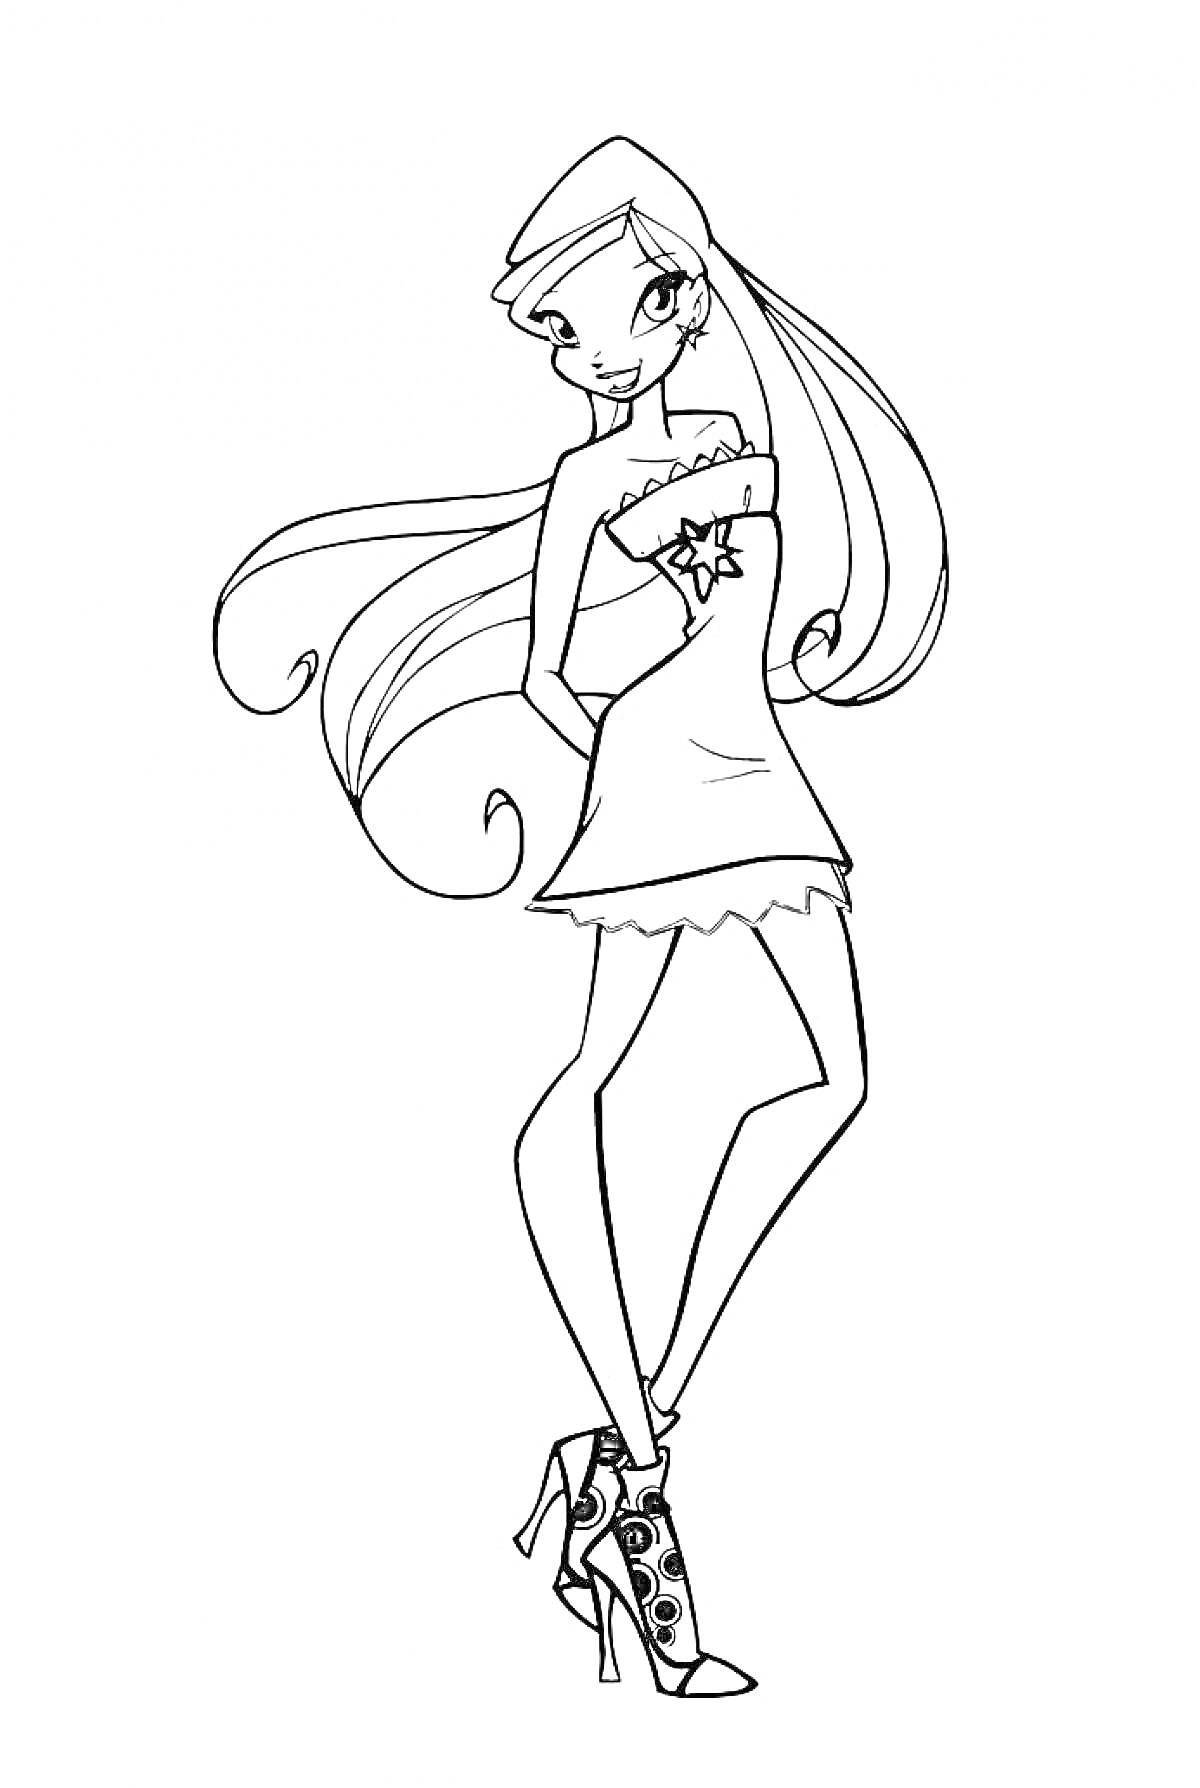 Раскраска Винкс Стелла в коротком платье и высоких ботильонах на каблуке, с длинными волосами и звёздной брошью на платье